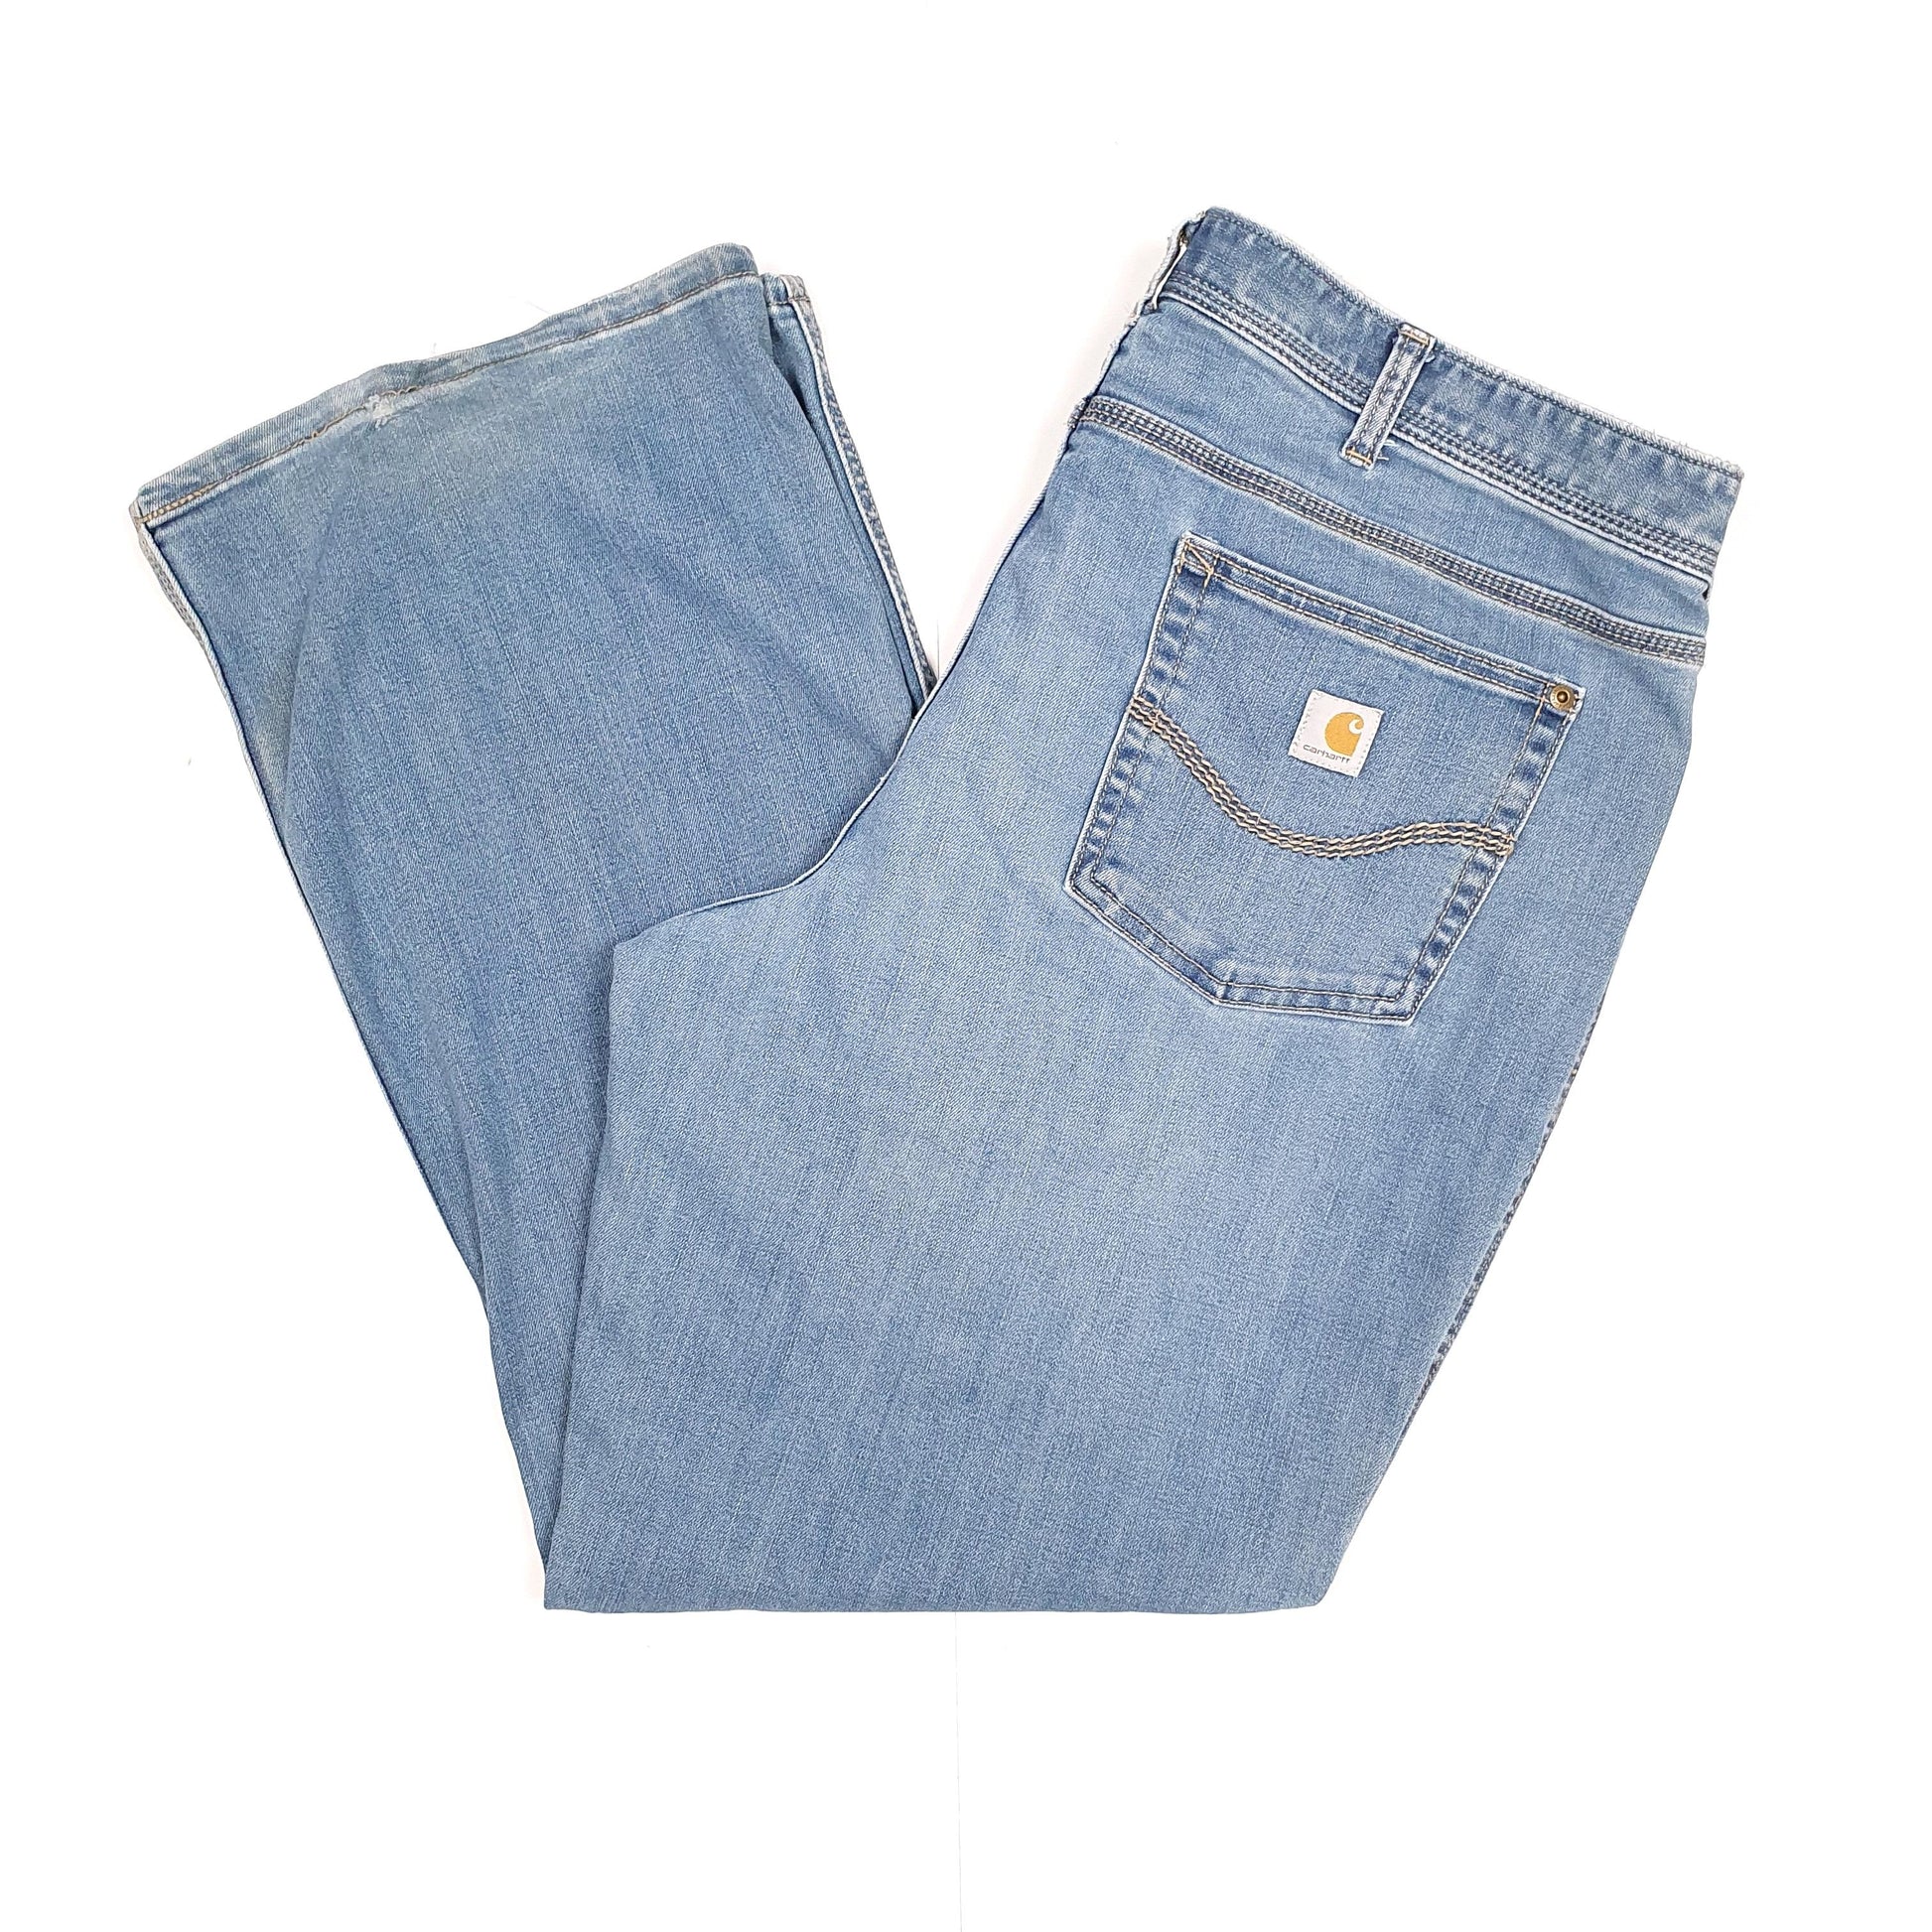 Blue Carhartt Workwear Jeans